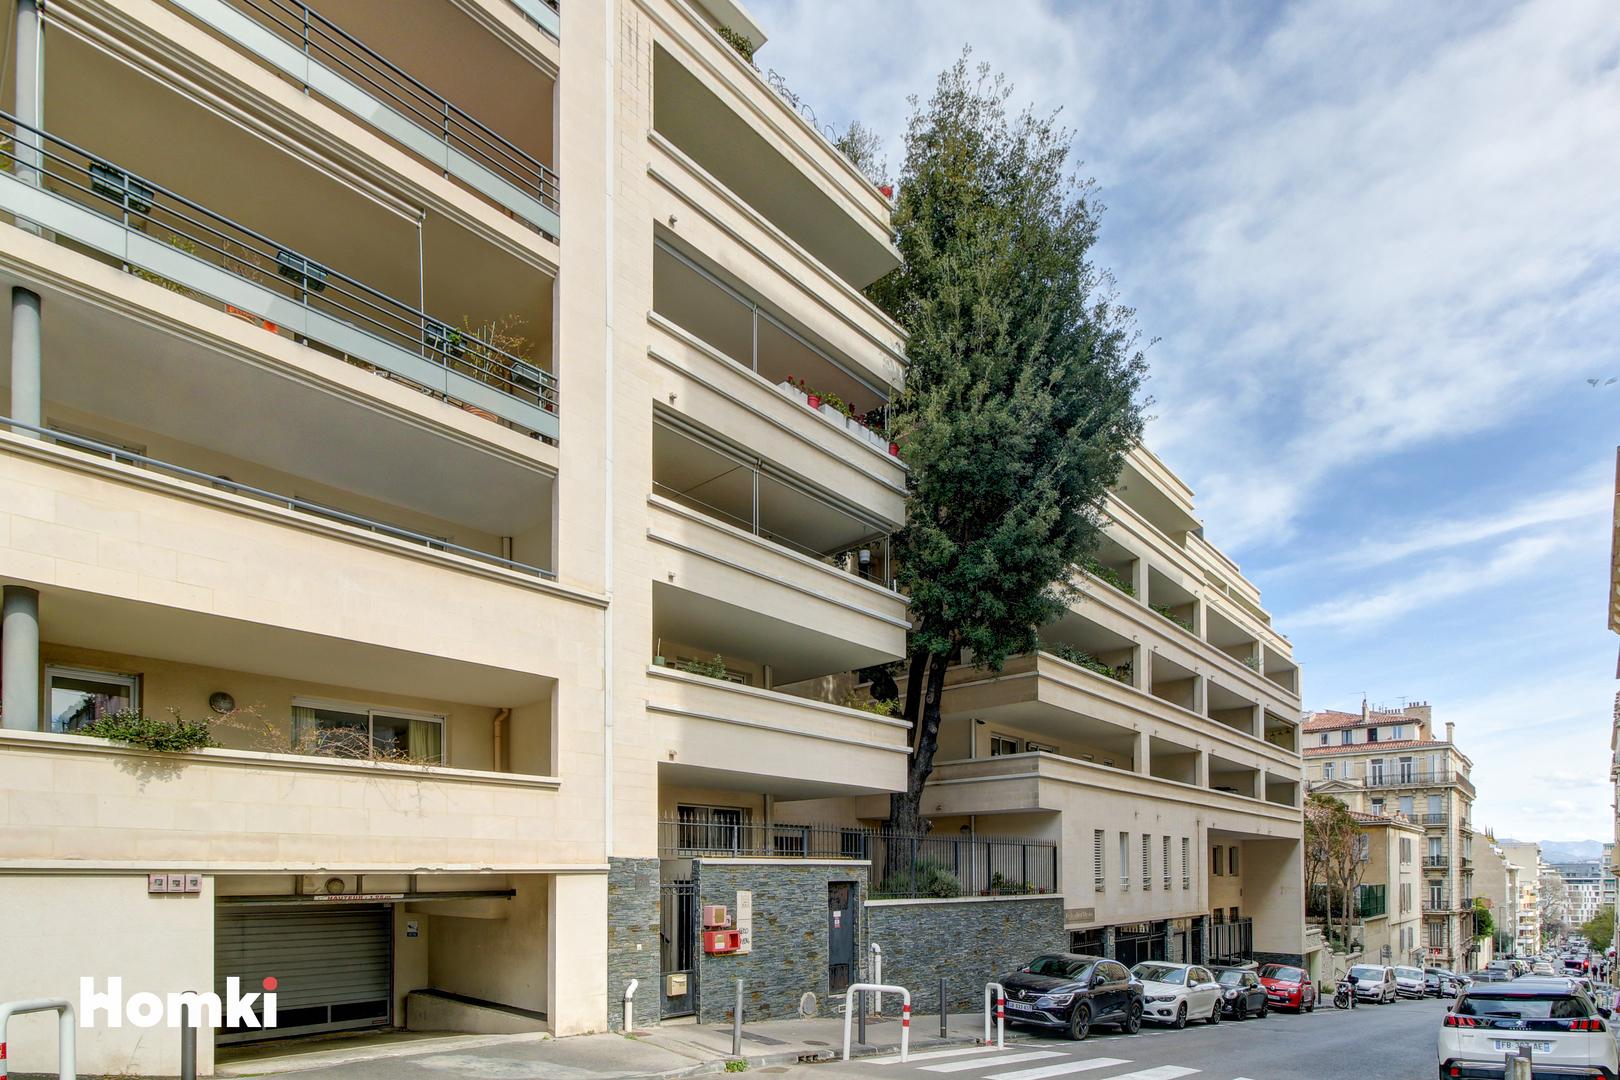 Homki - Vente Appartement  de 57.0 m² à Marseille 13008